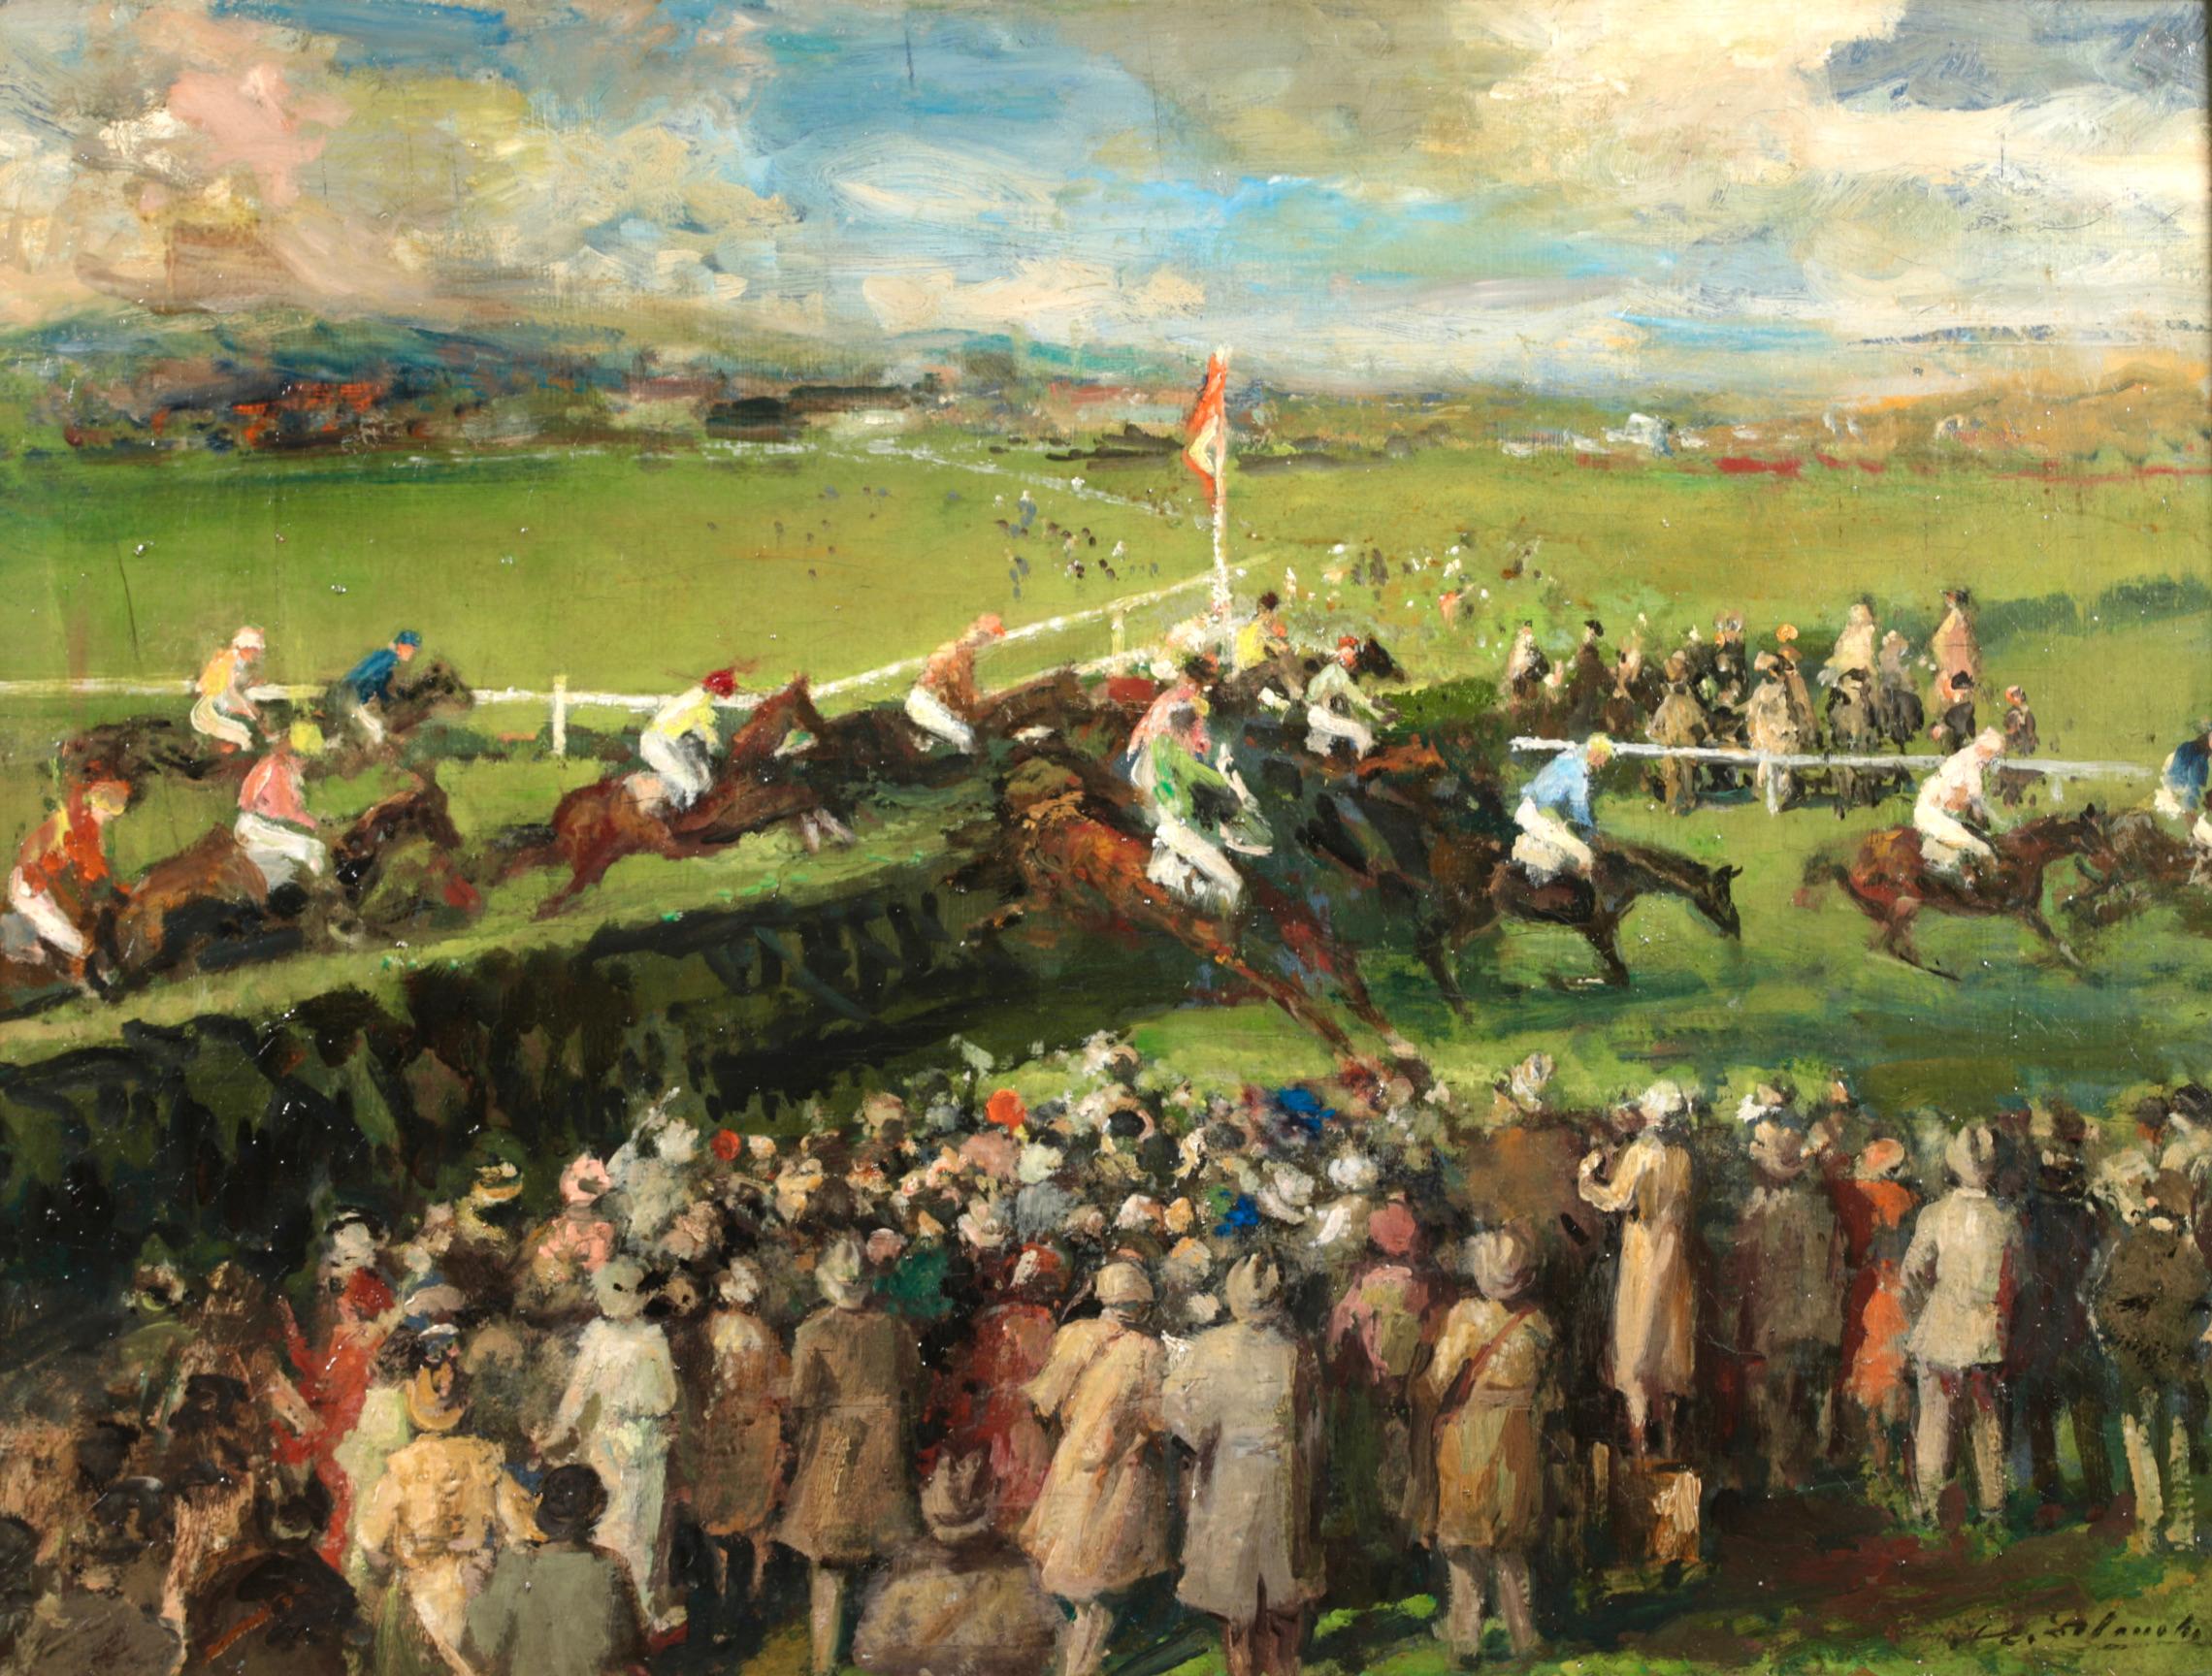 Peinture à l'huile « At the Races » (Les chevaux et les personnages post-impressionnistes) de Jacques-Emile Blanche - Painting de Jacques Emile Blanche